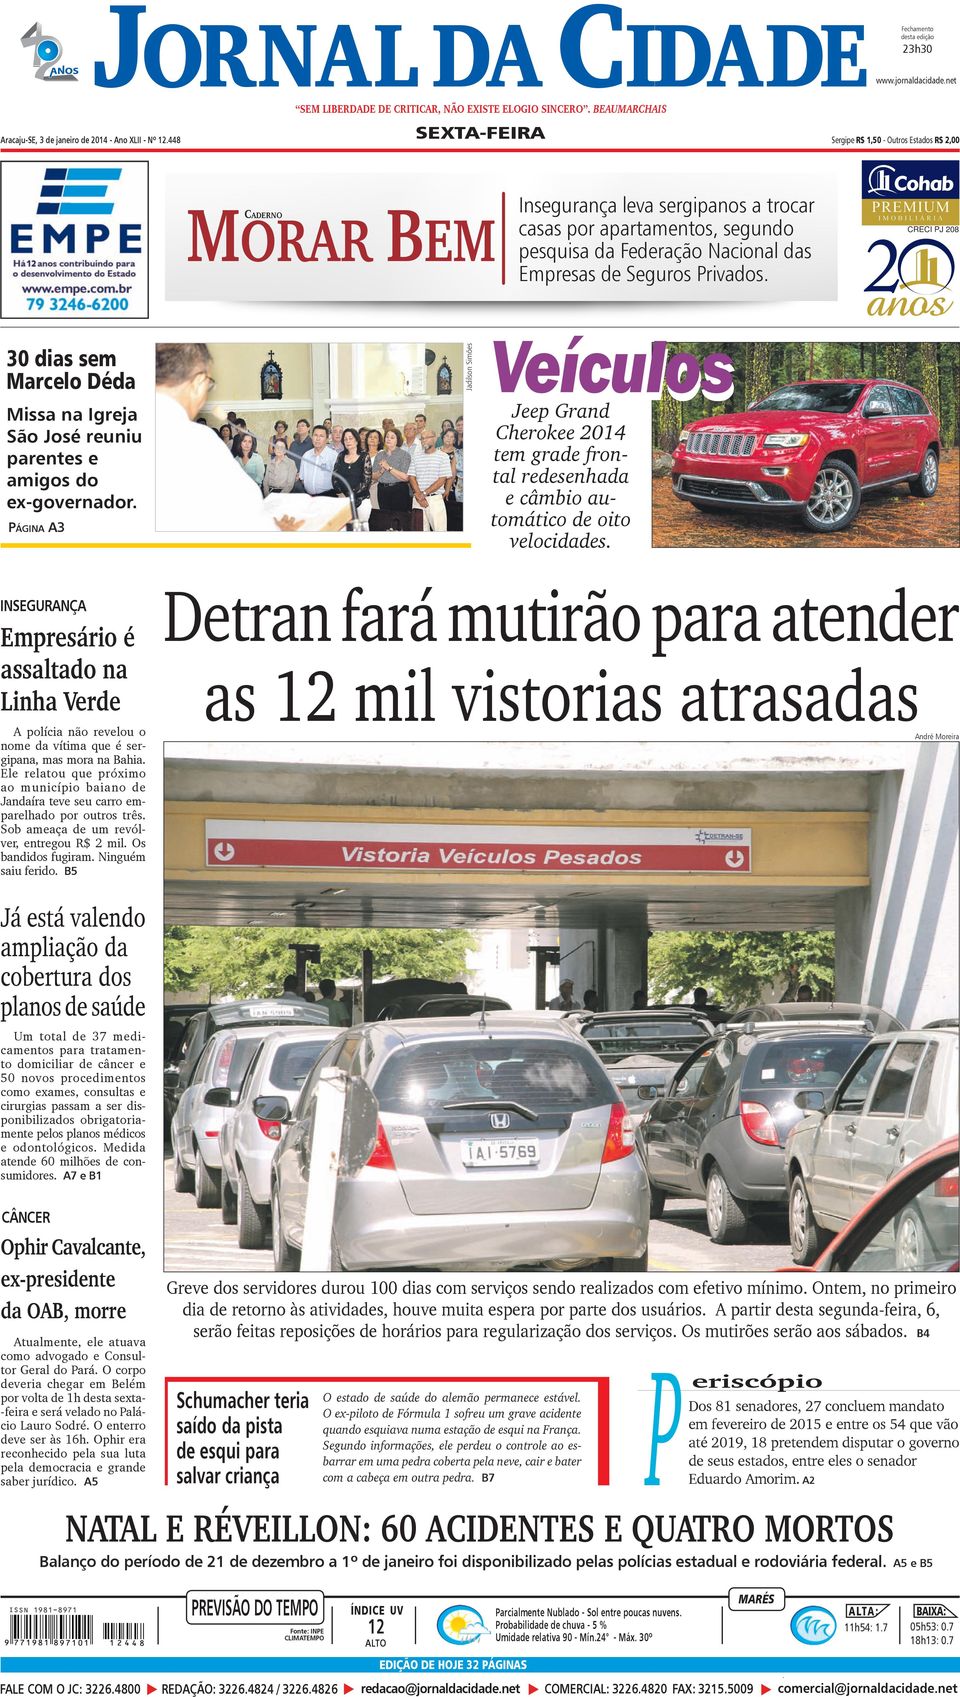 Privados. CRECI PJ 208 30 dias sem Marcelo Déda Missa na Igreja São José reuniu parentes e amigos do ex-governador.